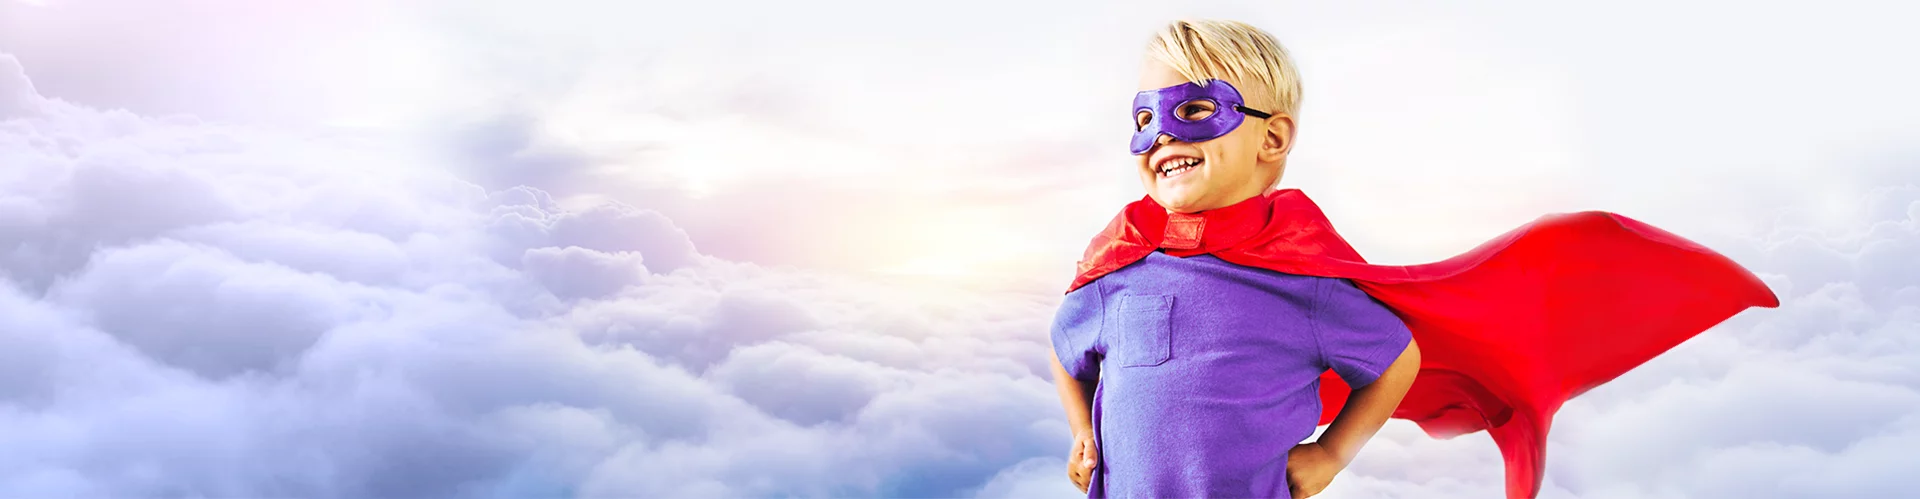 Imagem de criança com capa de super herói